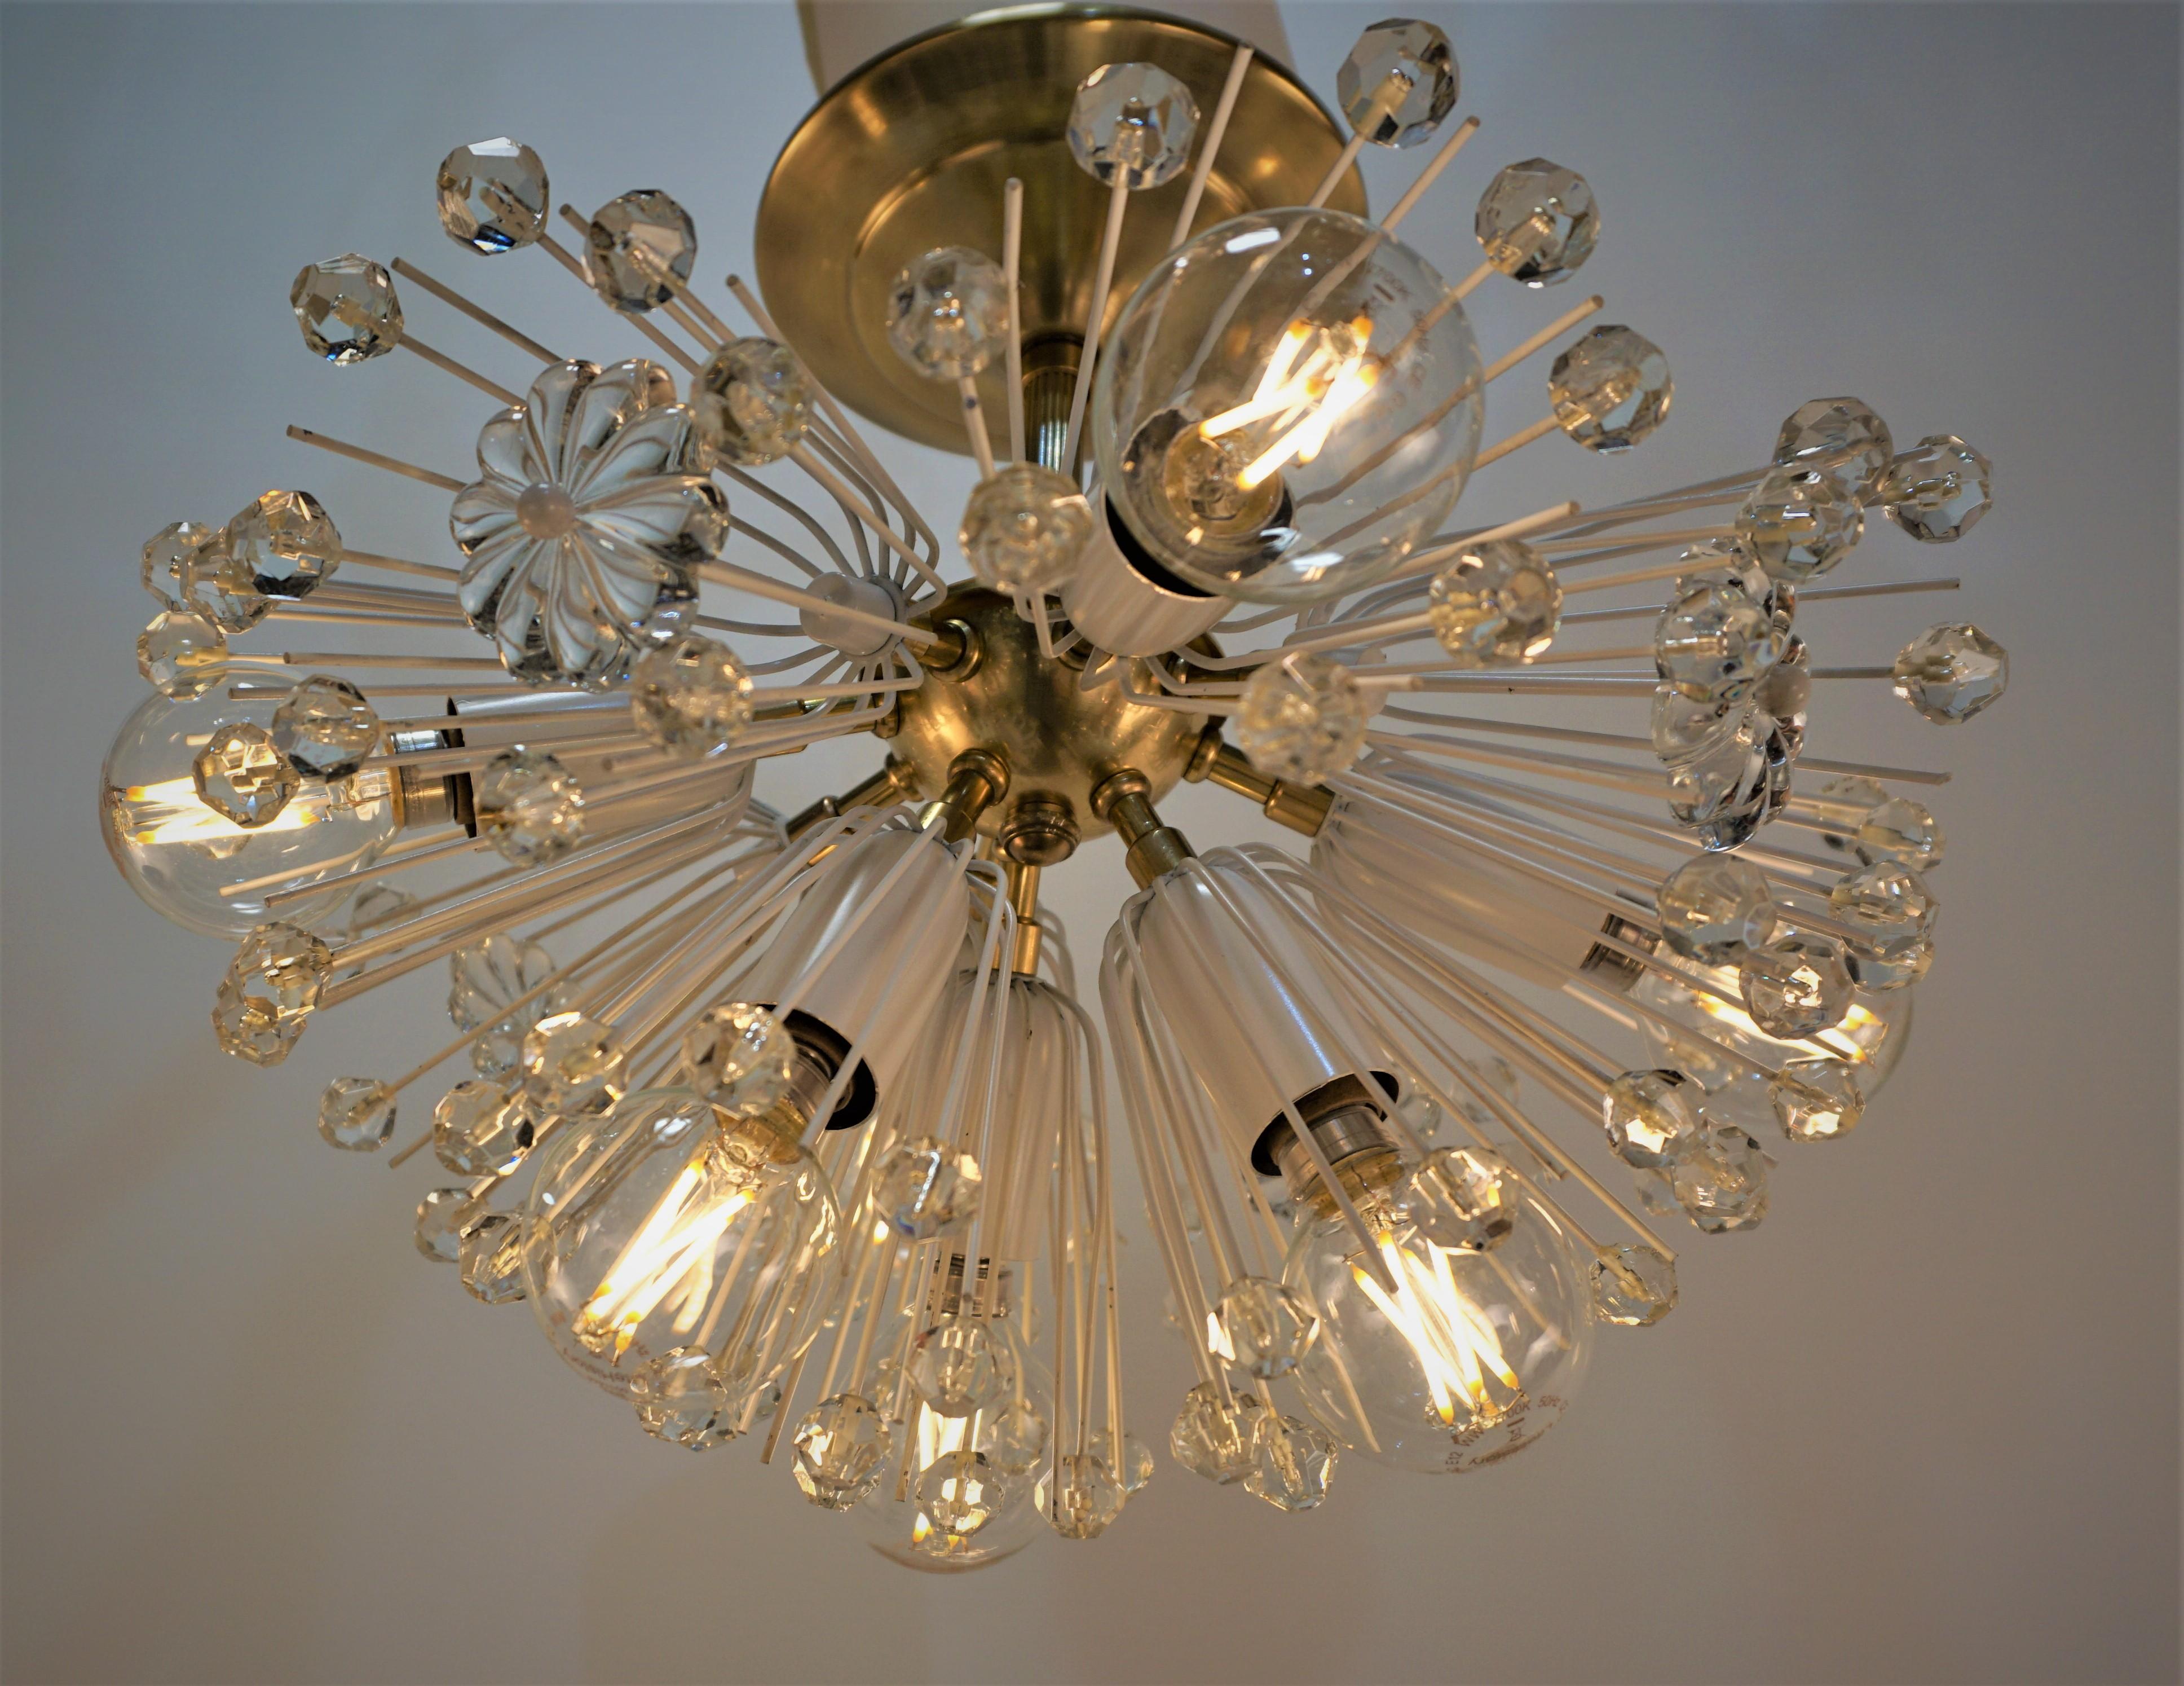 Dandelion design semi flush Sputnik crystal and bronze chandelier.
Height is 14